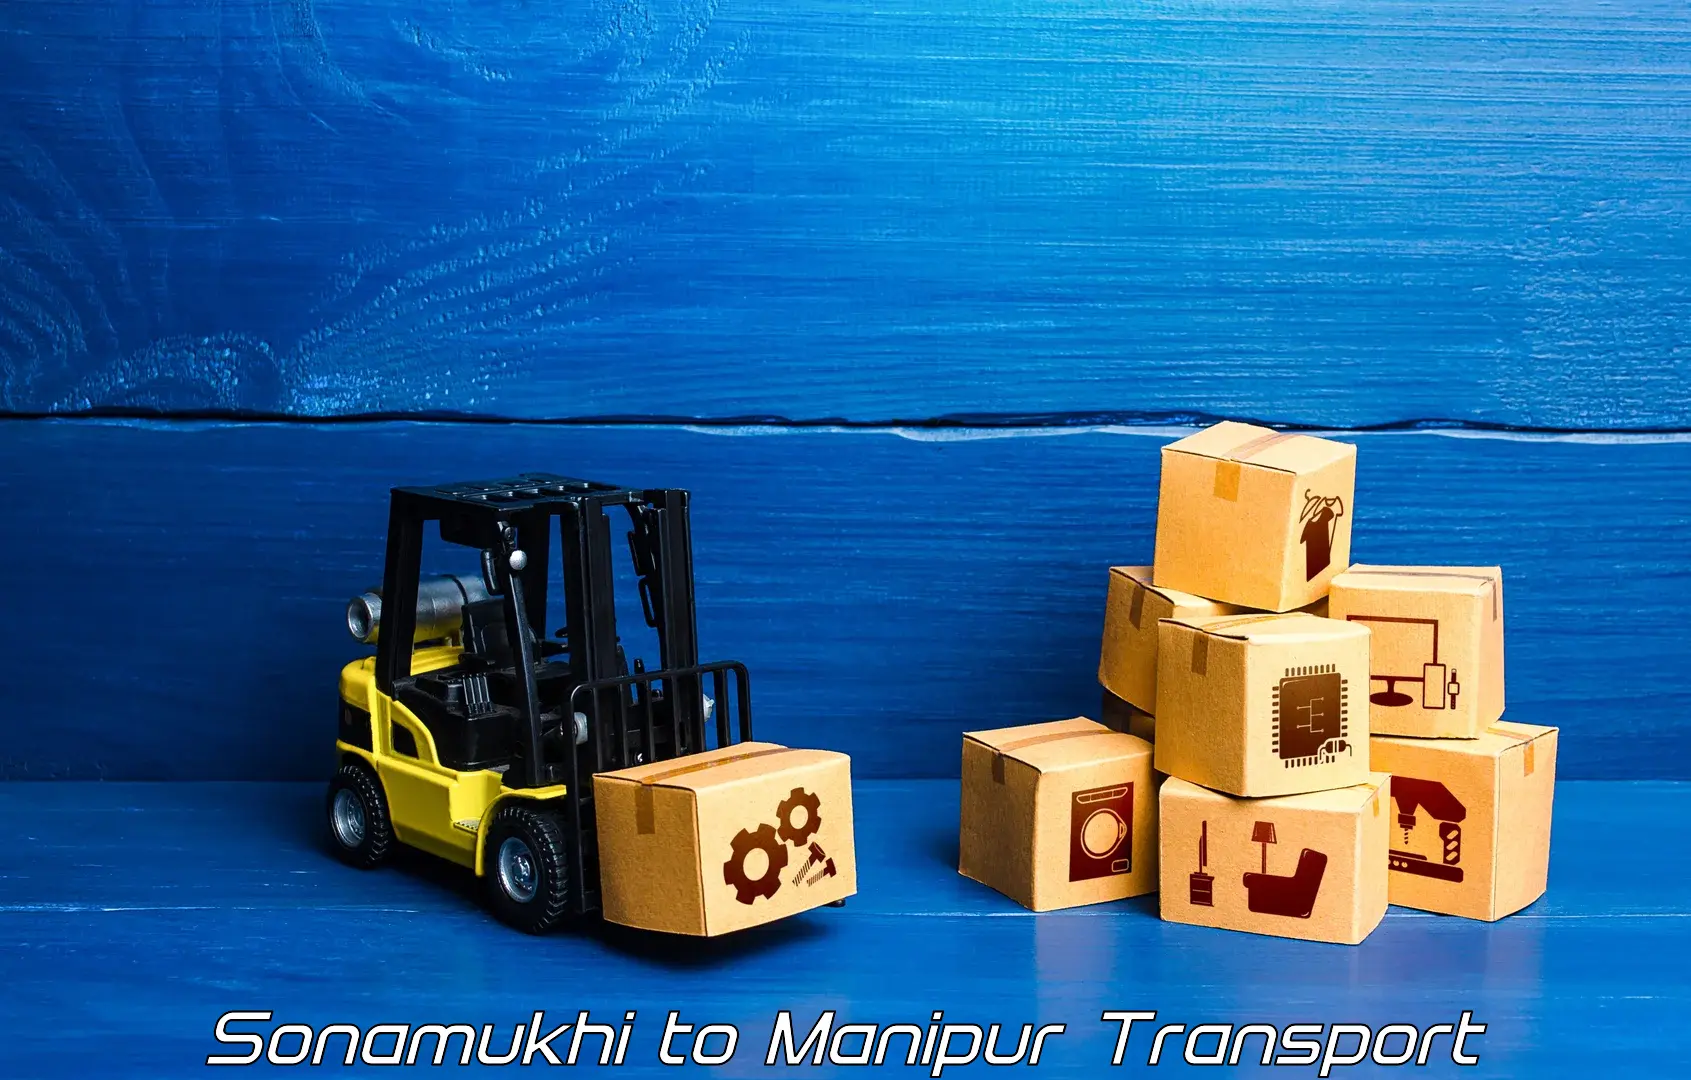 Transport in sharing in Sonamukhi to Kanti